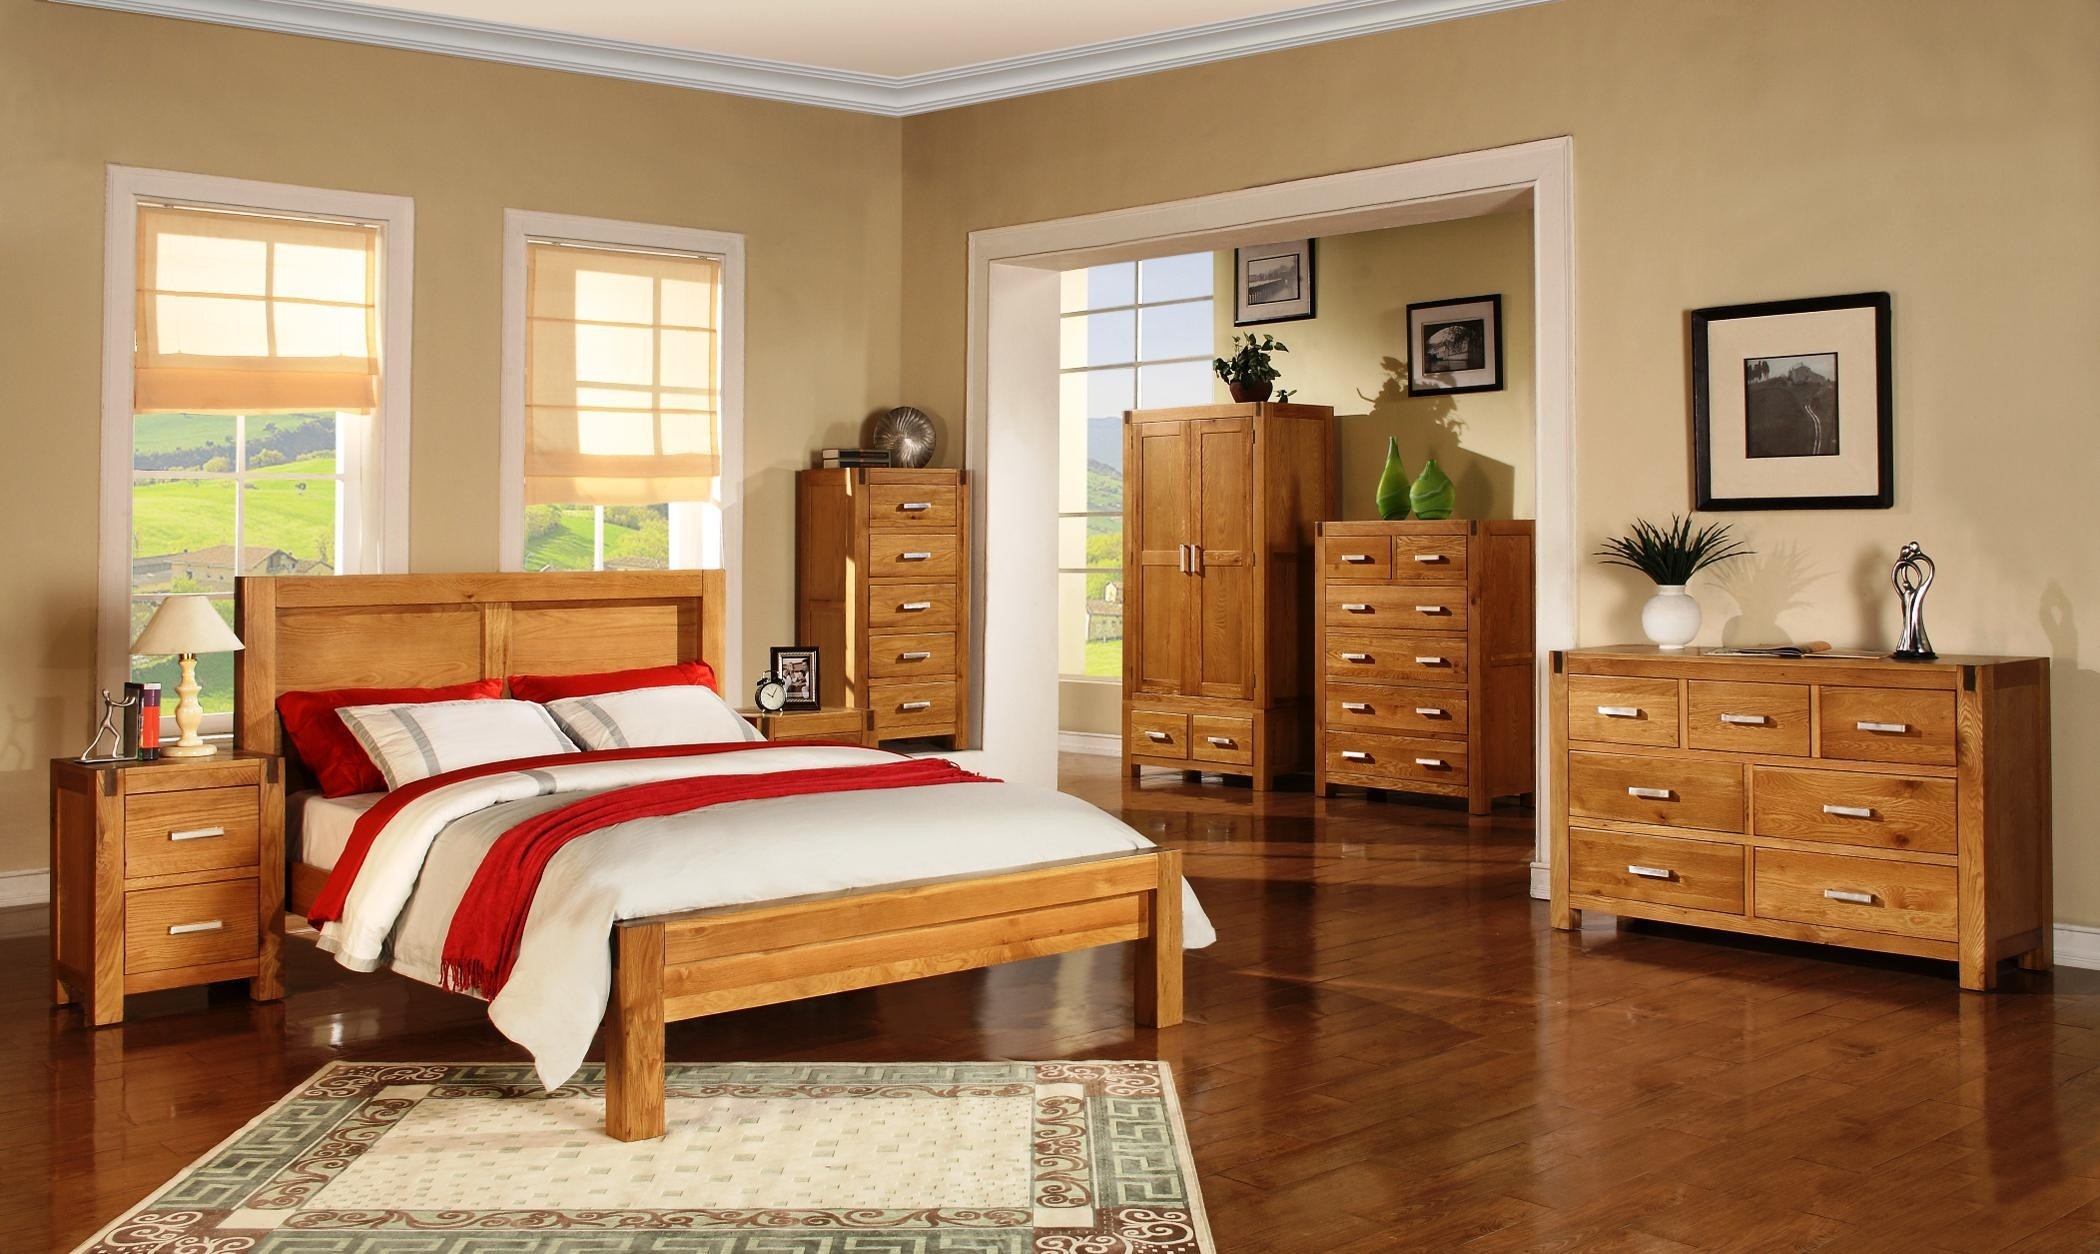 bedroom decor ideas with oak furniture